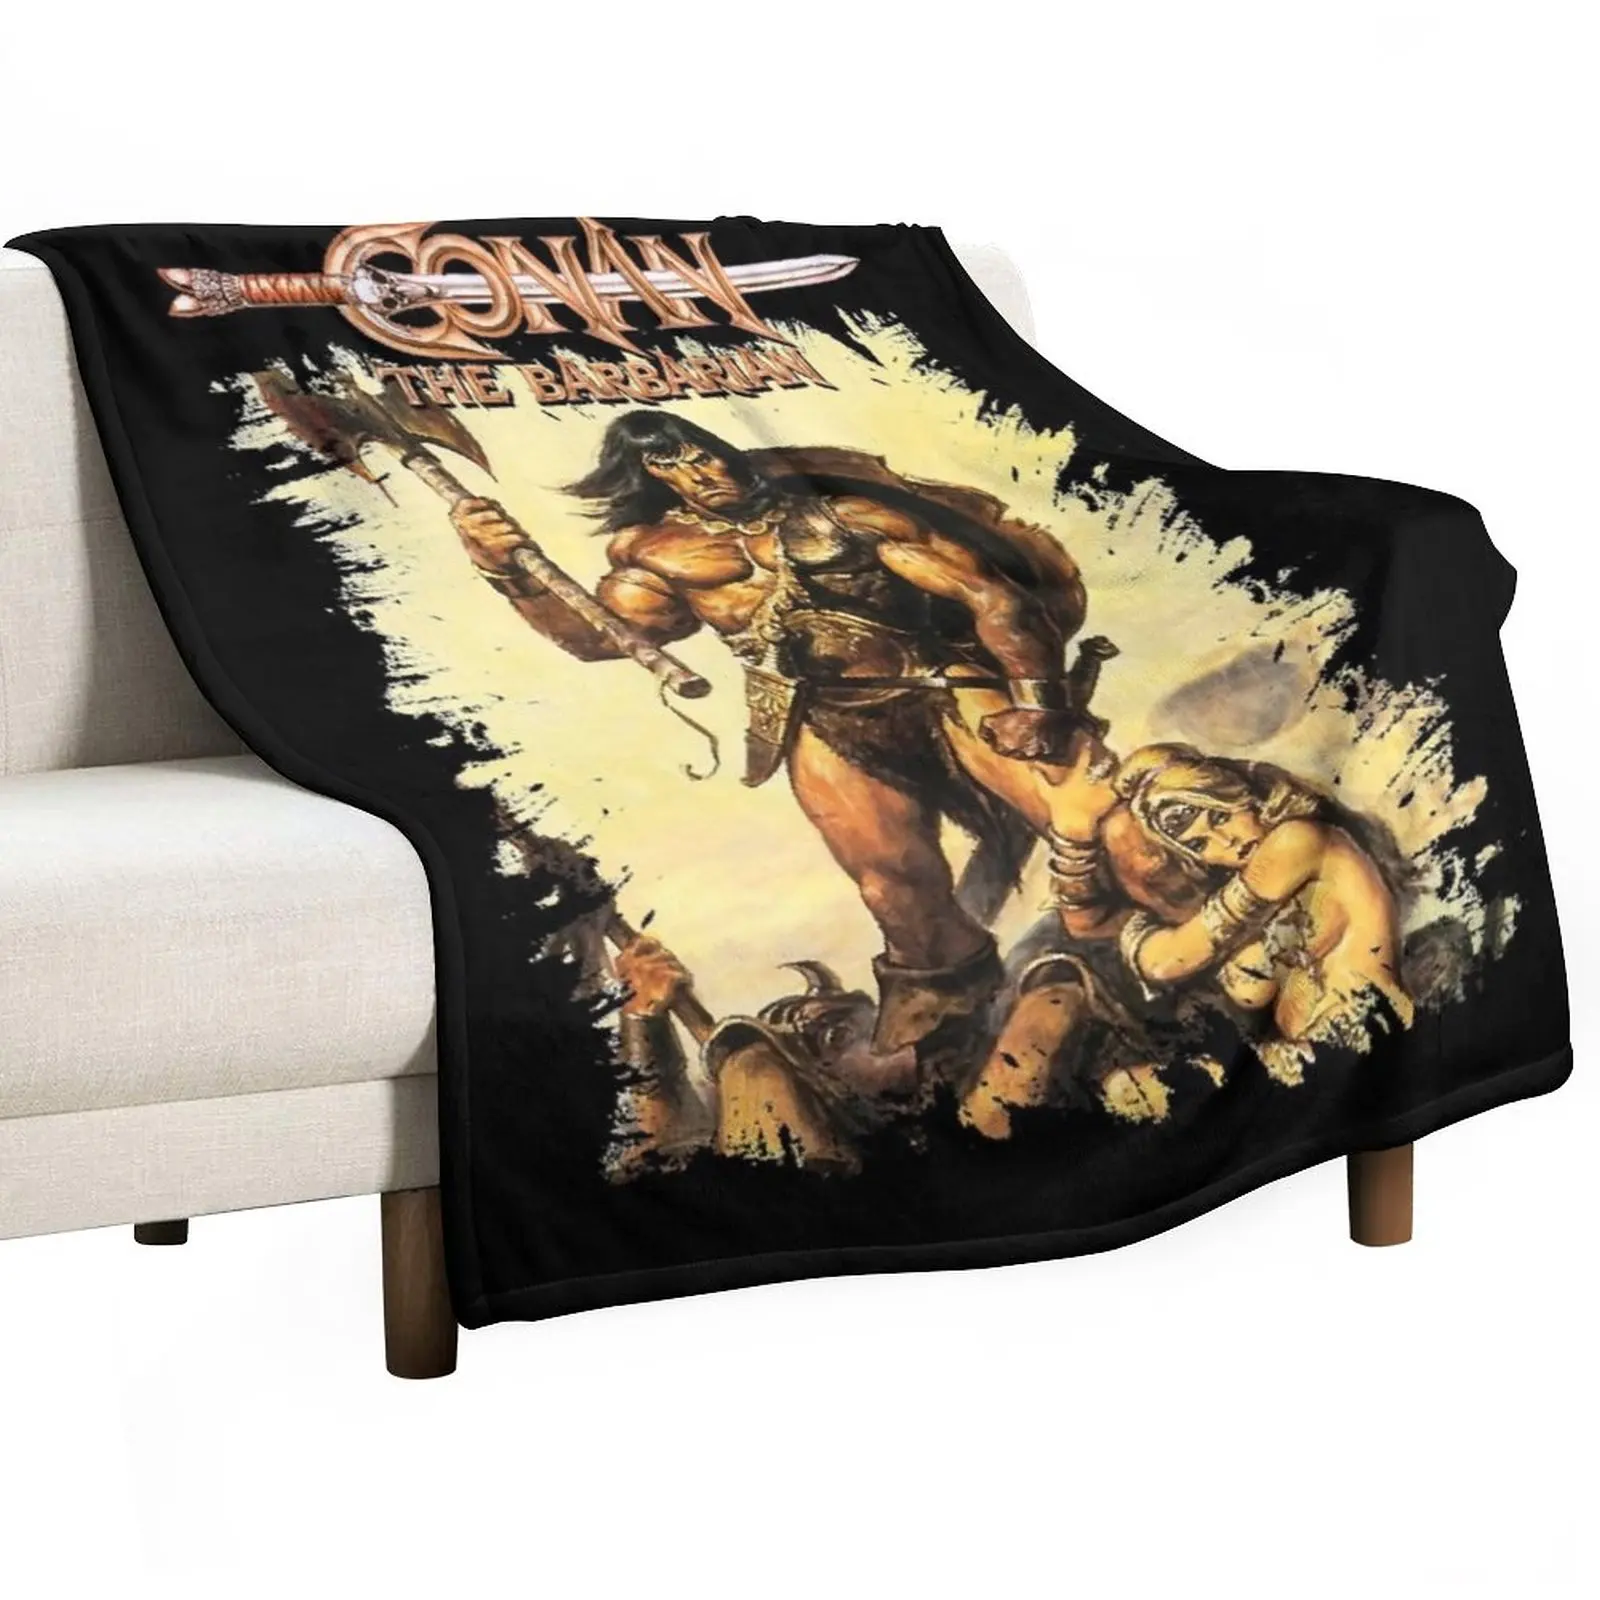 

Одеяло Conan the насыщенное барбаром, тепловое одеяло для дивана, тонкие мягкие пледовые одеяла для диванов